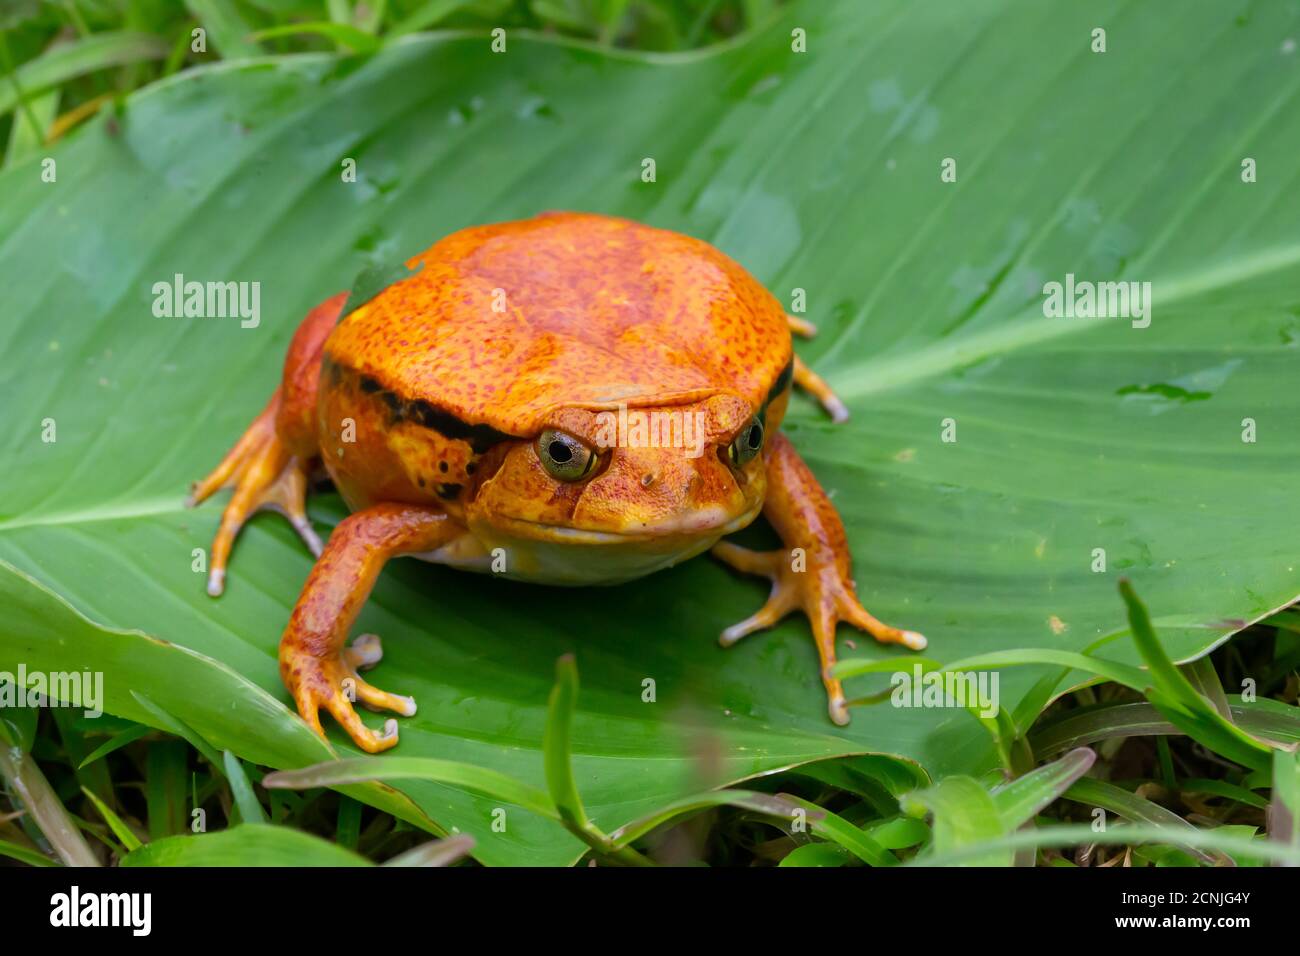 Ein großer oranger Frosch sitzt auf einem grünen Blatt Stockfoto